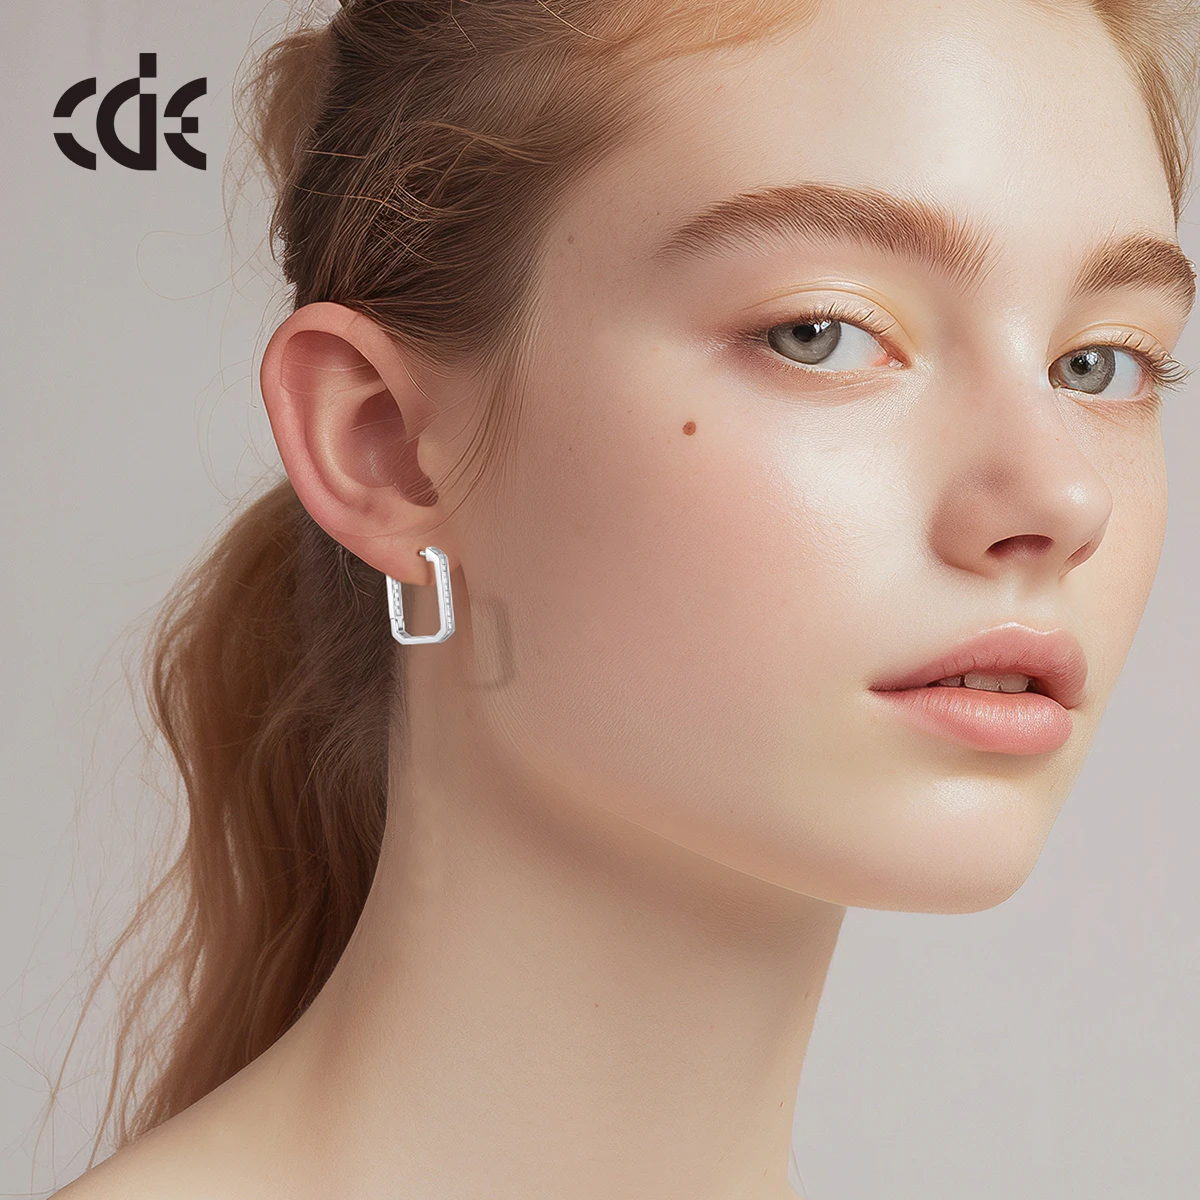 CDE CZYE028 Fine Jewelry Earrings 925 Sterling Silver Zircon Women Earring Wholesale Rhodium Plated Square Hoop Earrings